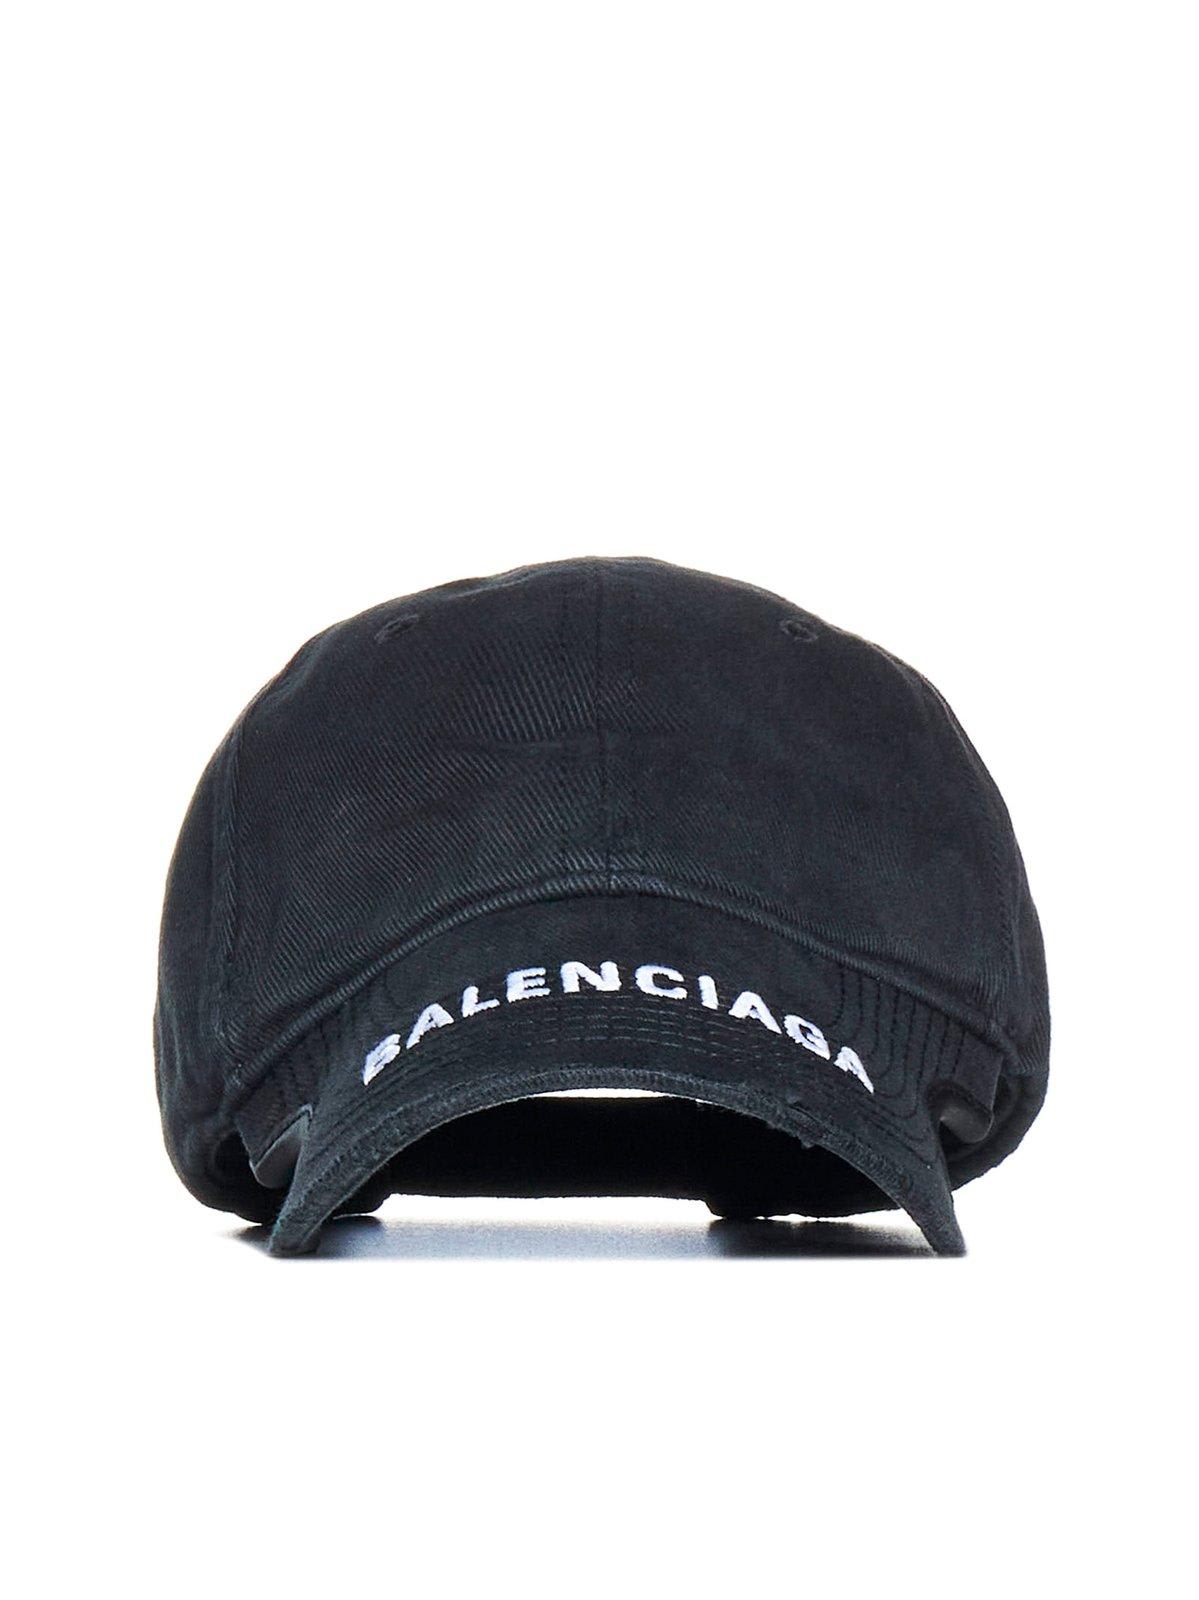 Balenciaga Logo Embroidered Baseball Cap